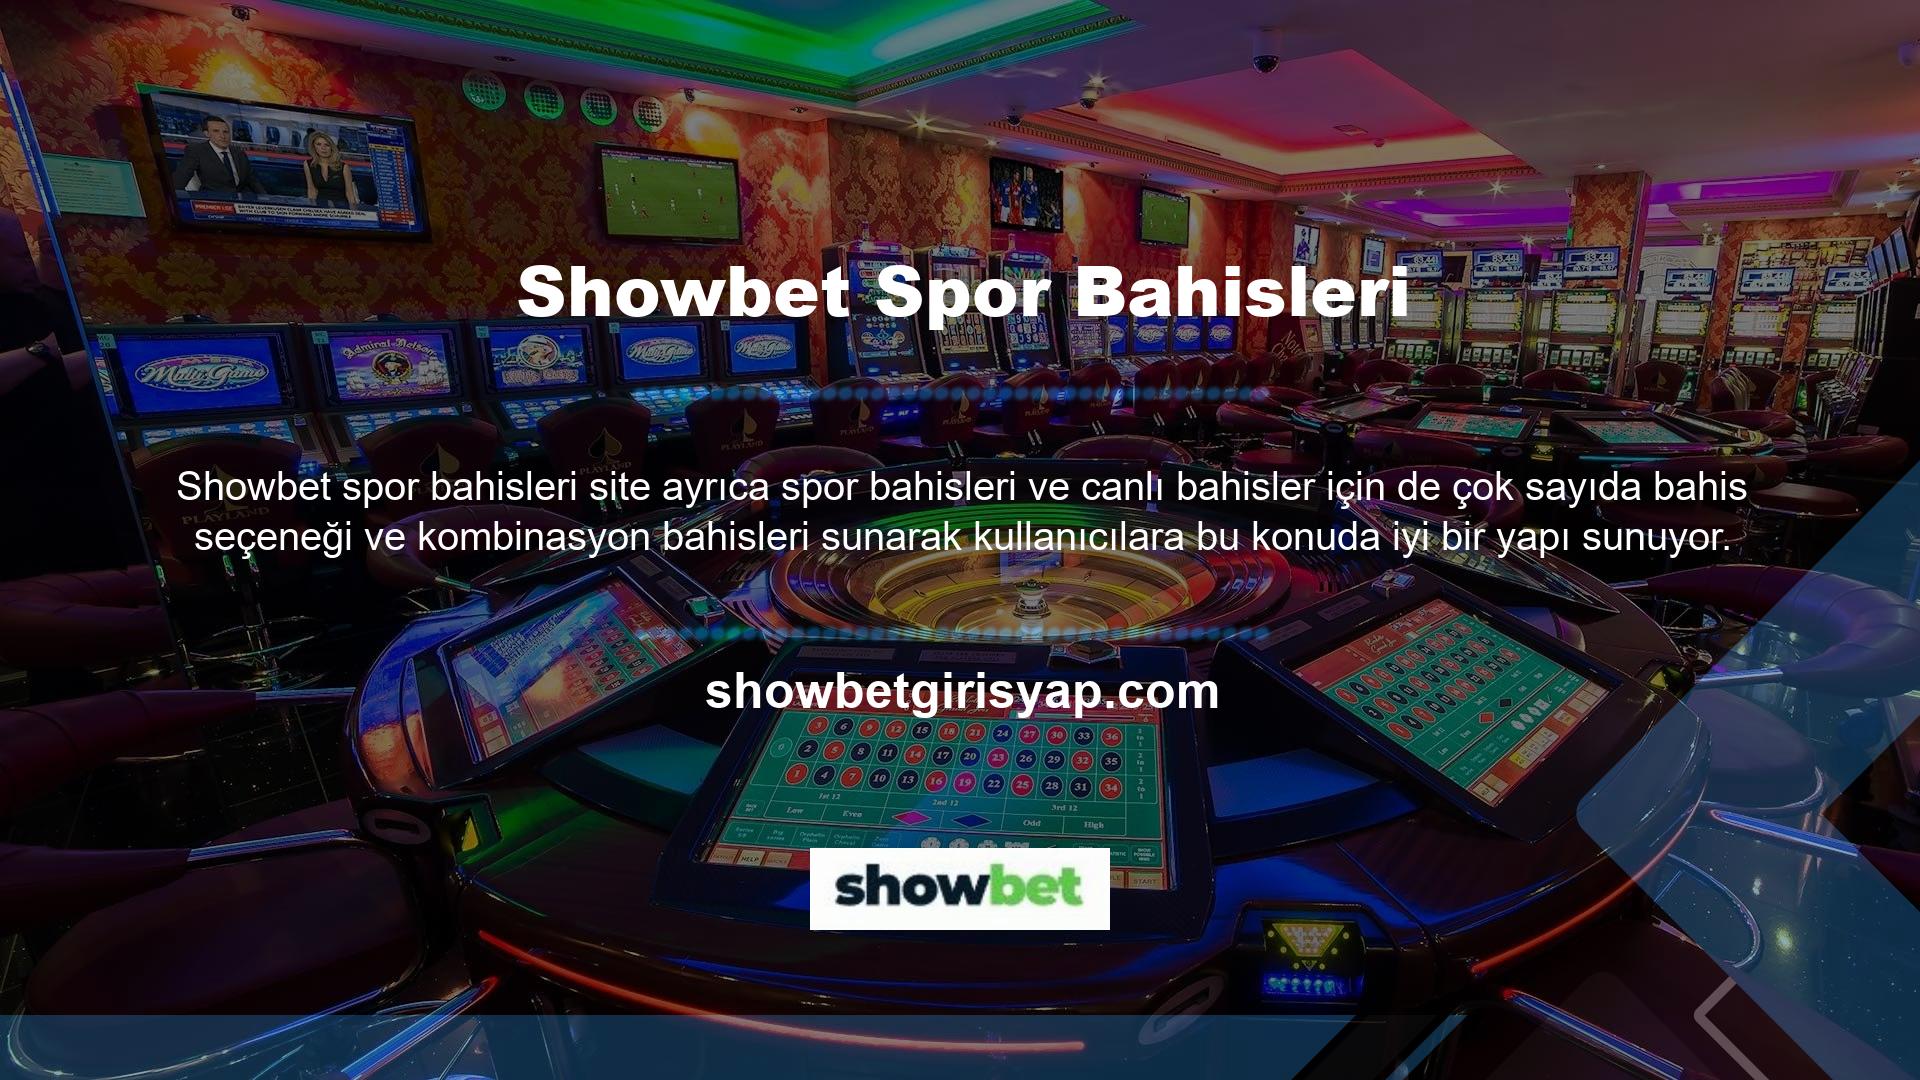 Buna ek olarak, Showbet bahisçileri casino oyunları, canlı casino içeriği, çeşitli sanal bahis ürünleri, poker, tavla, Auki, bingo ve diğer benzer içerikleri içeren ve bir kişiselleştirme aracı olarak mükemmel yüksek kaliteli teklifler alabilirler